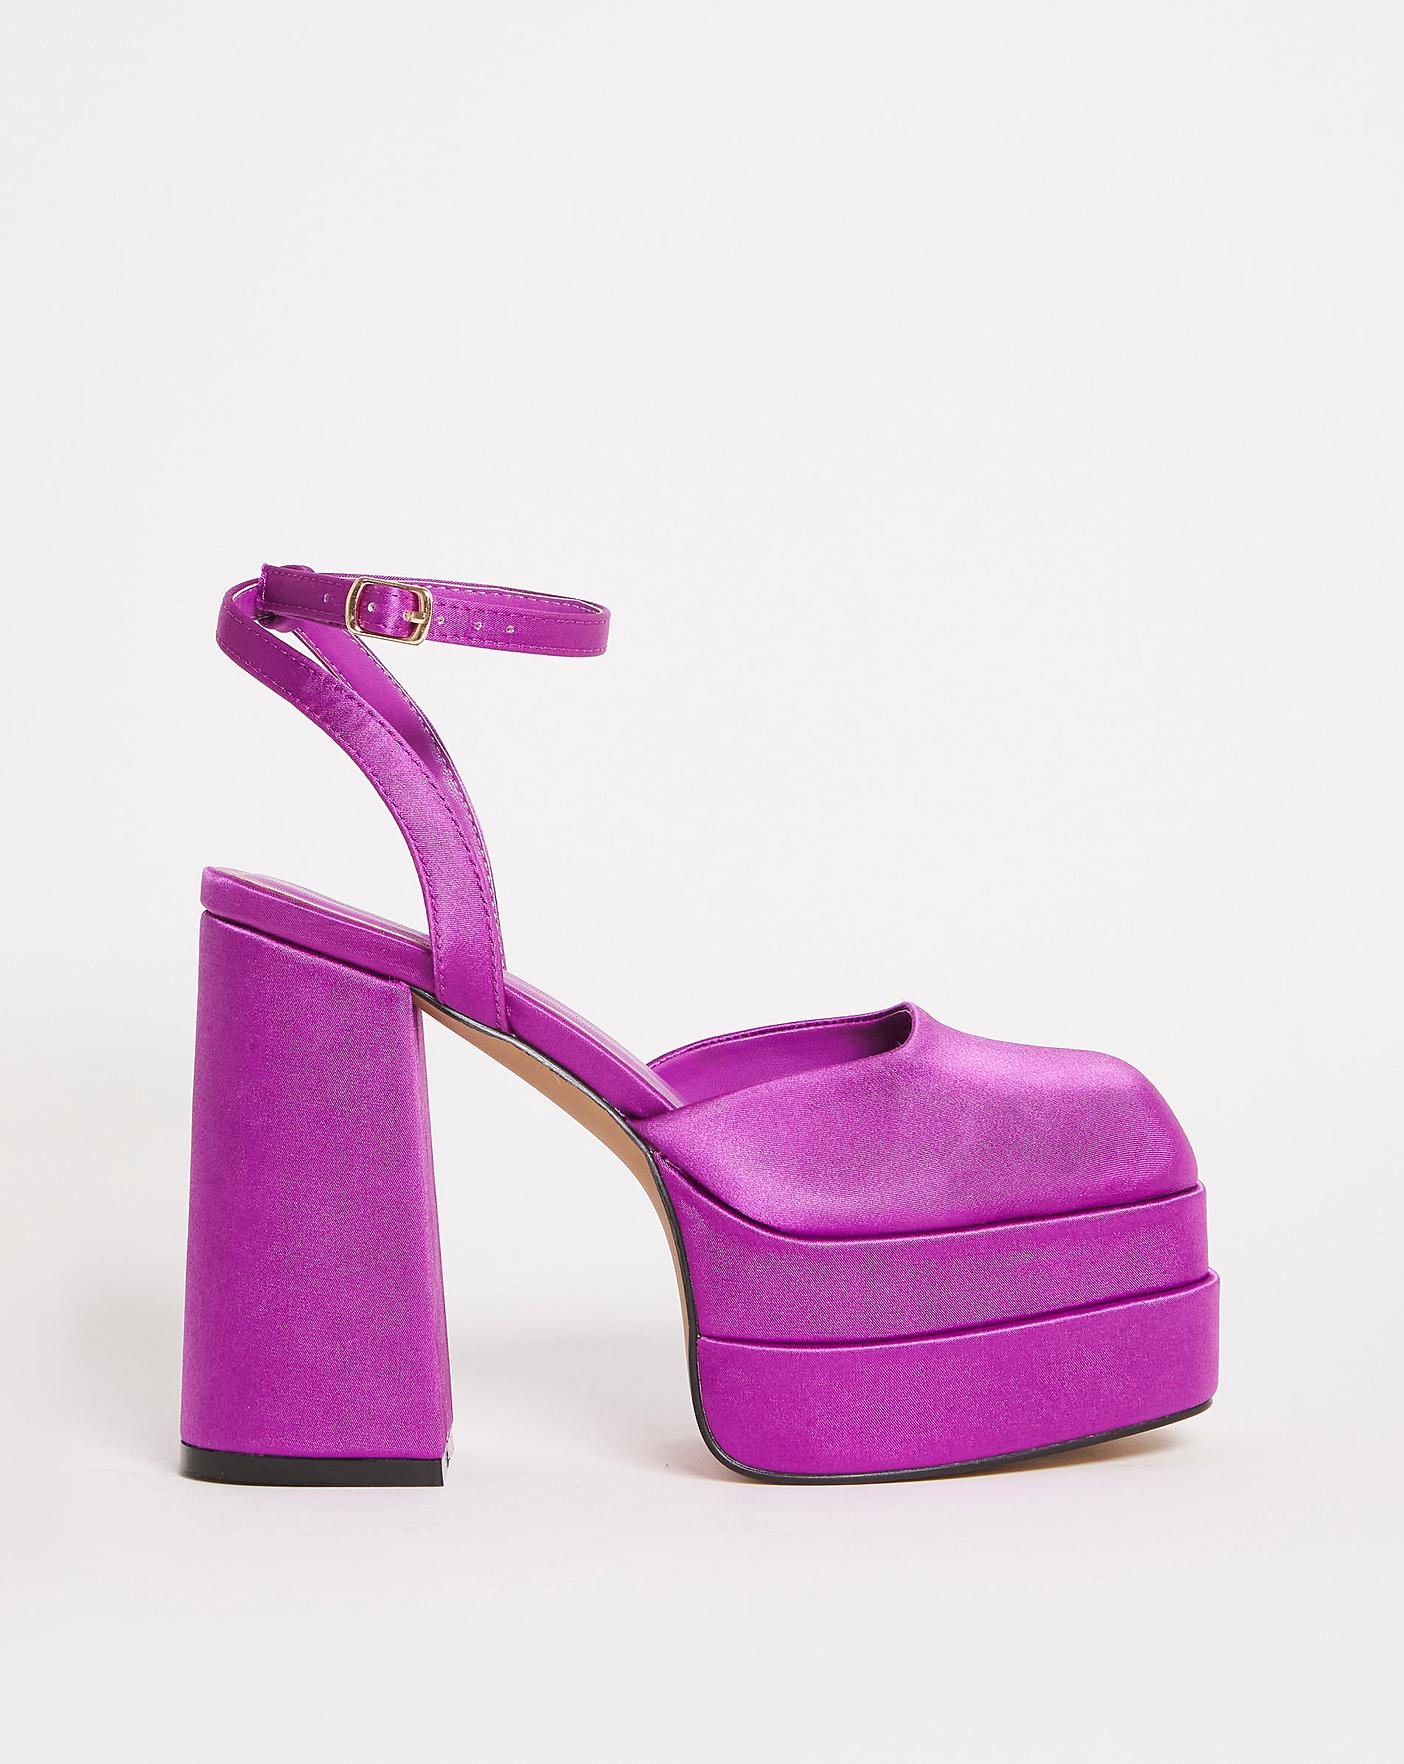 SAM EDELMAN LADIES BETH SQUARE TOE HEEL HIGH 3.75 INCHES – Frankel's  Designer Shoes